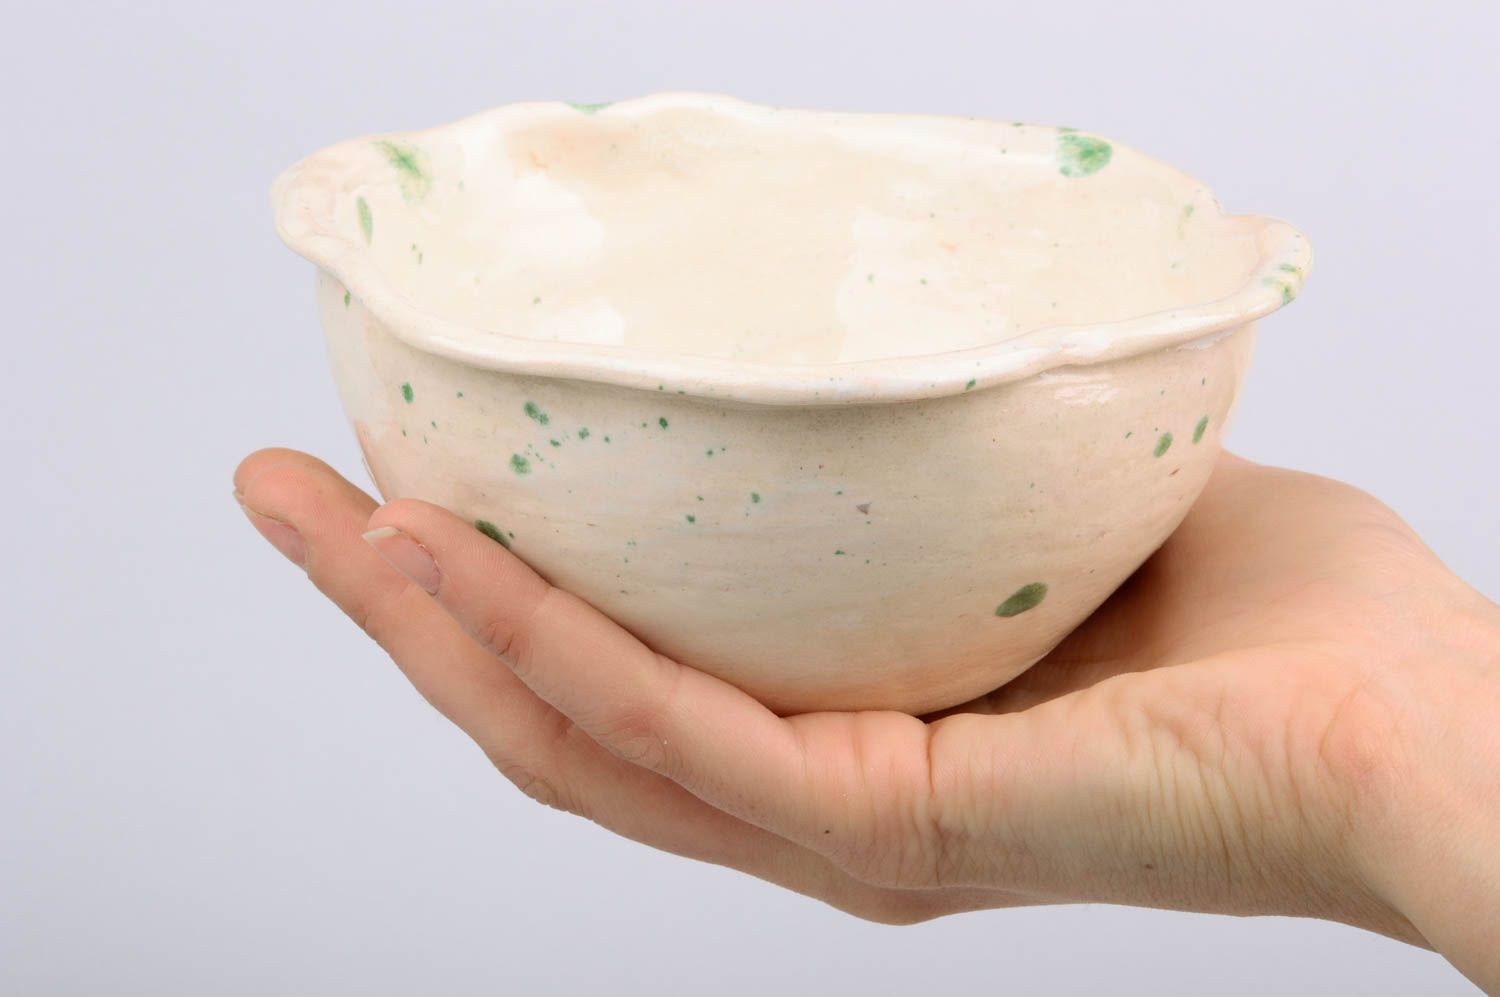 Small homemade ceramic bowl designer clay bowl designer ceramics gift ideas photo 3